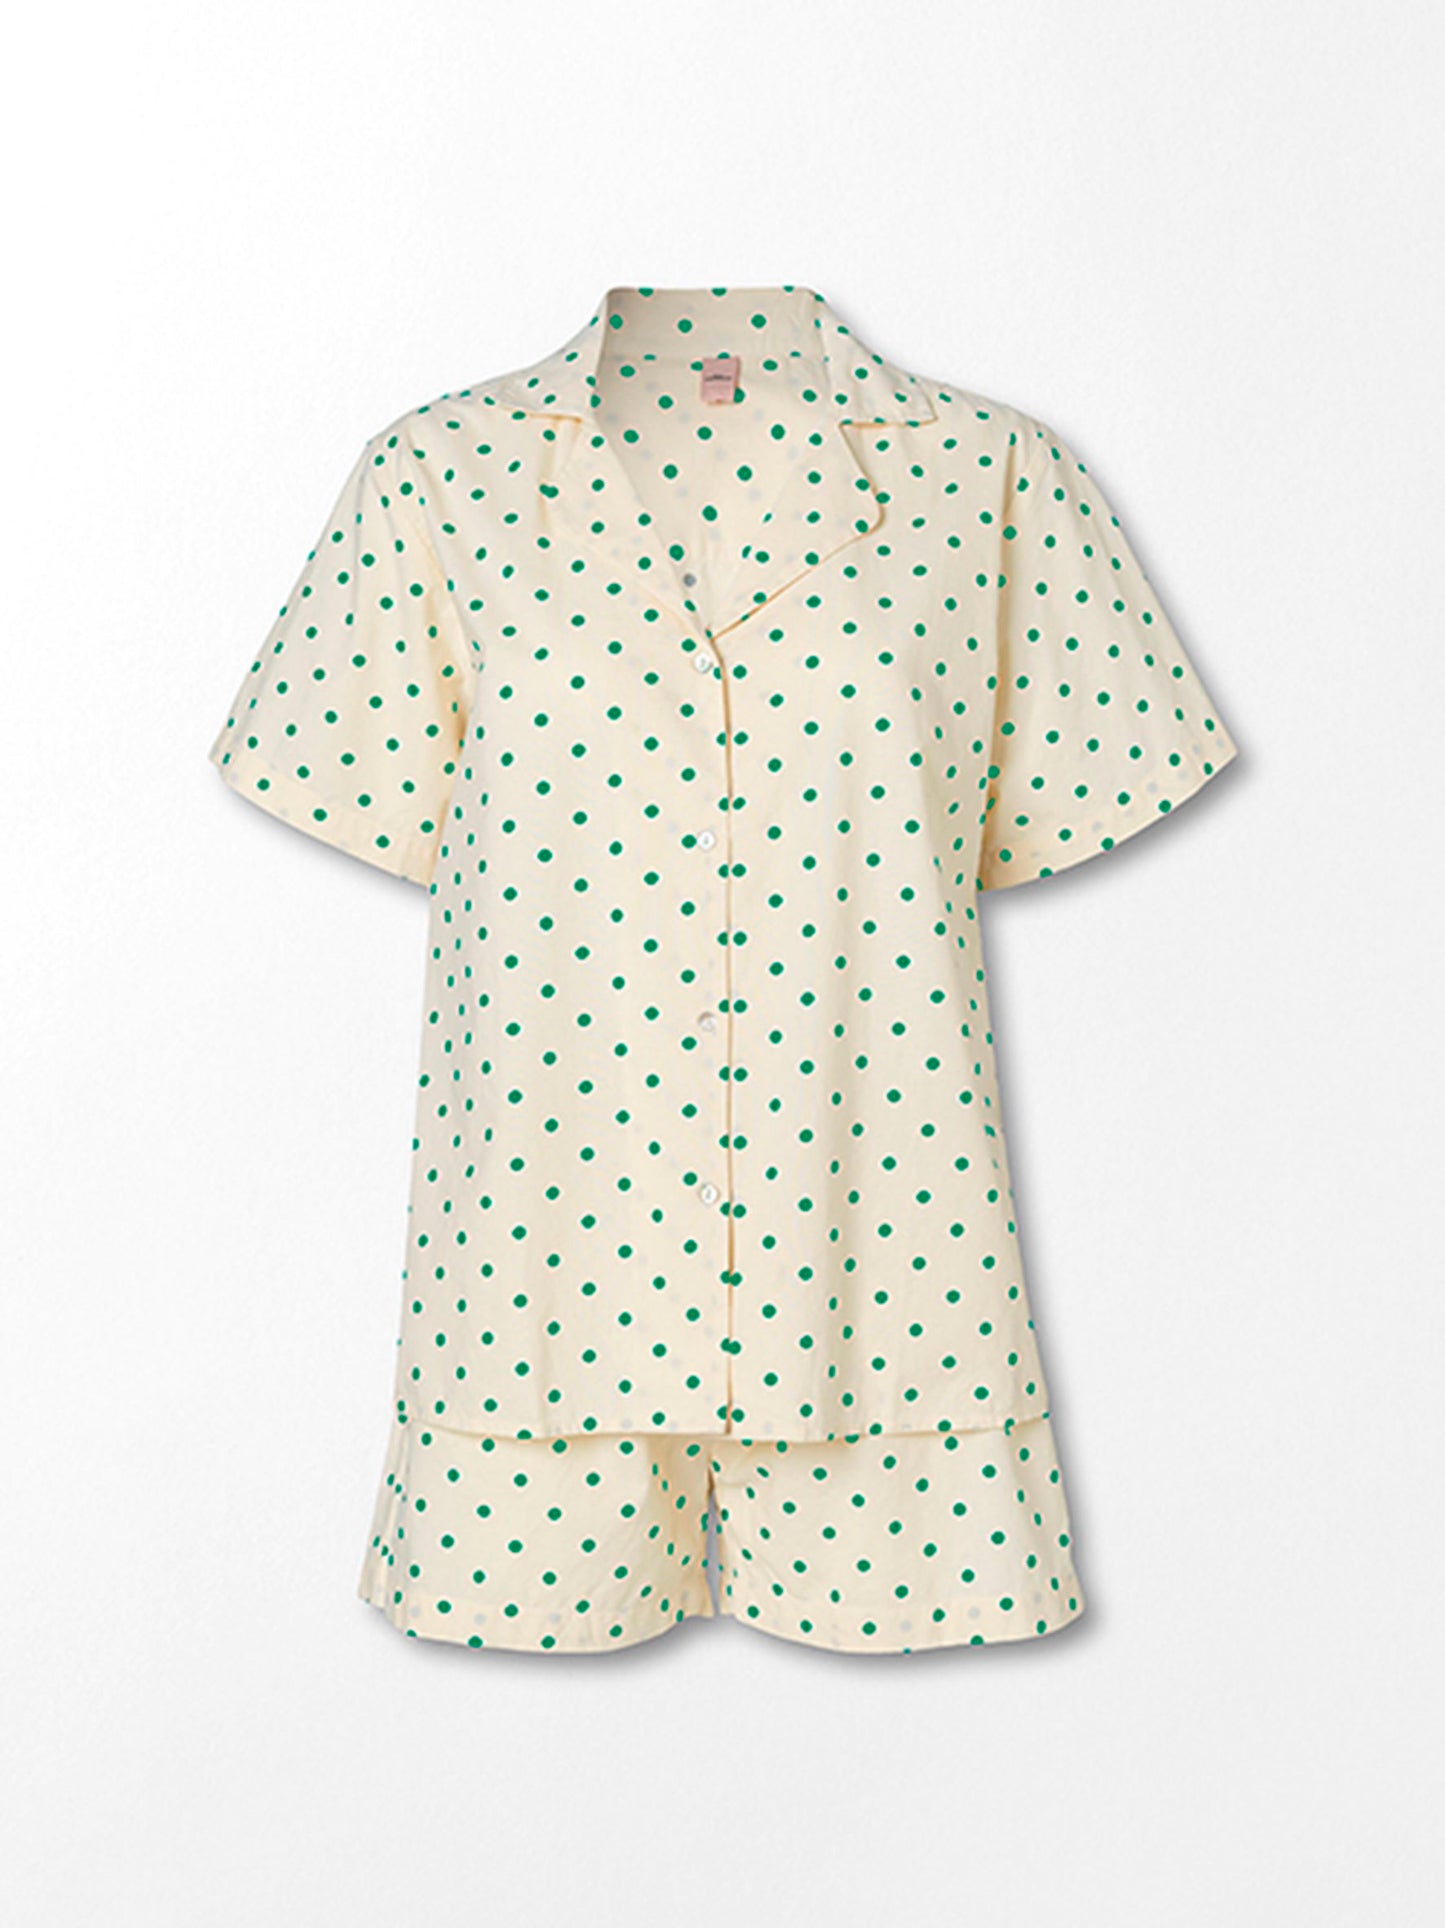 Dot Kallie Nightwear - Green Clothing Becksöndergaard.dk   